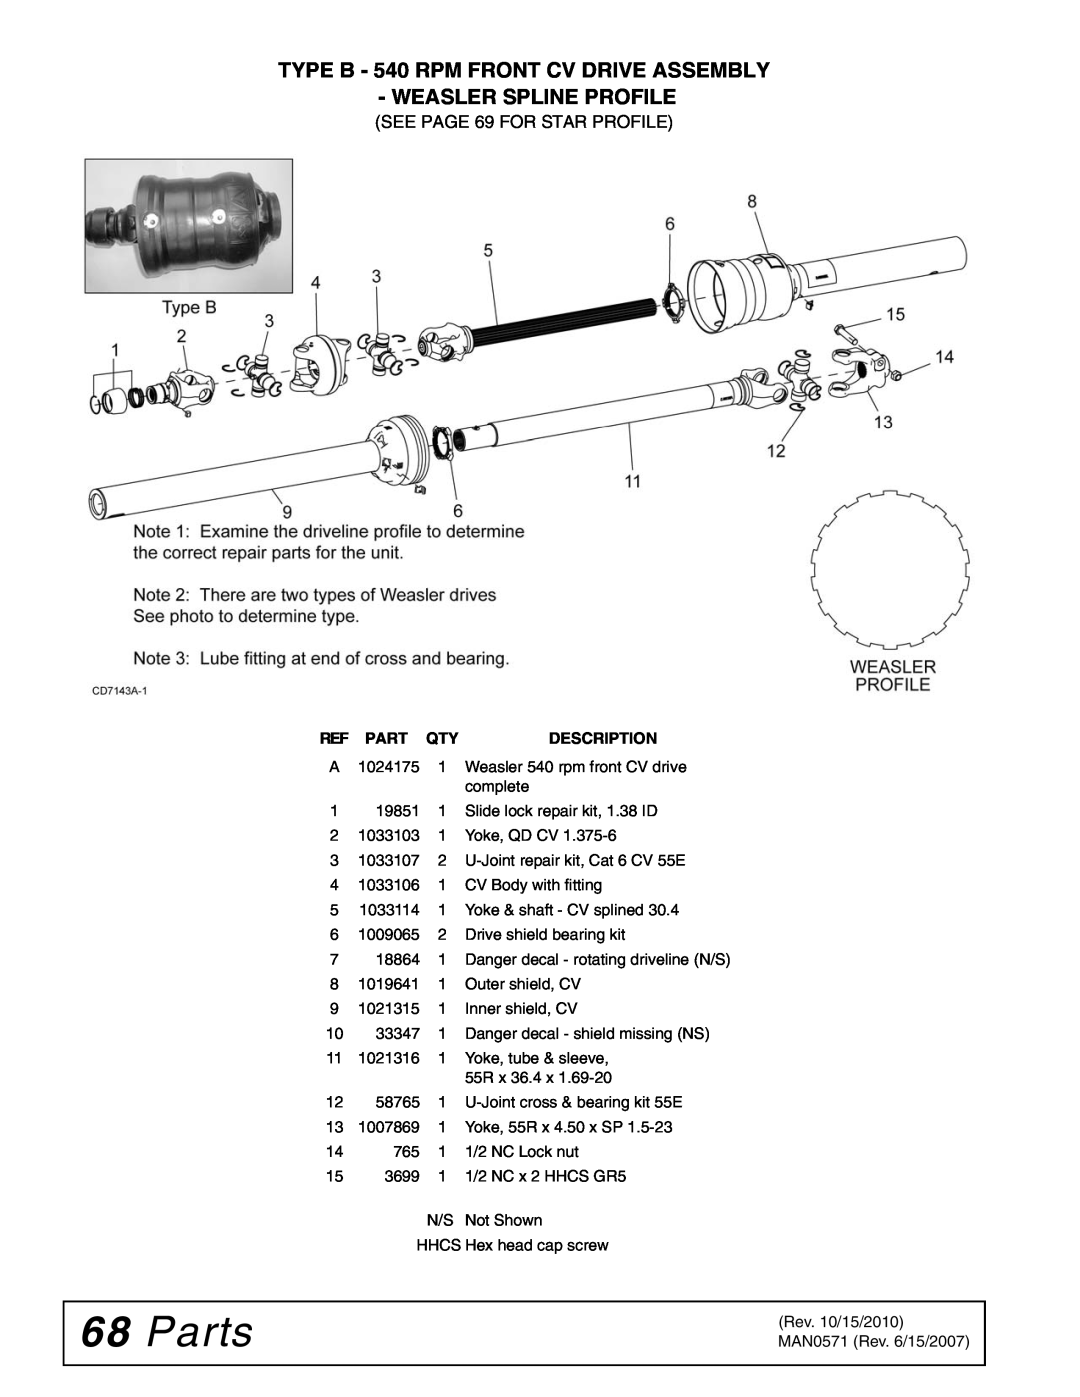 Woods Equipment DS1260, DSO1260Q manual Parts, TYPE B - 540 RPM FRONT CV DRIVE ASSEMBLY WEASLER SPLINE PROFILE, Description 